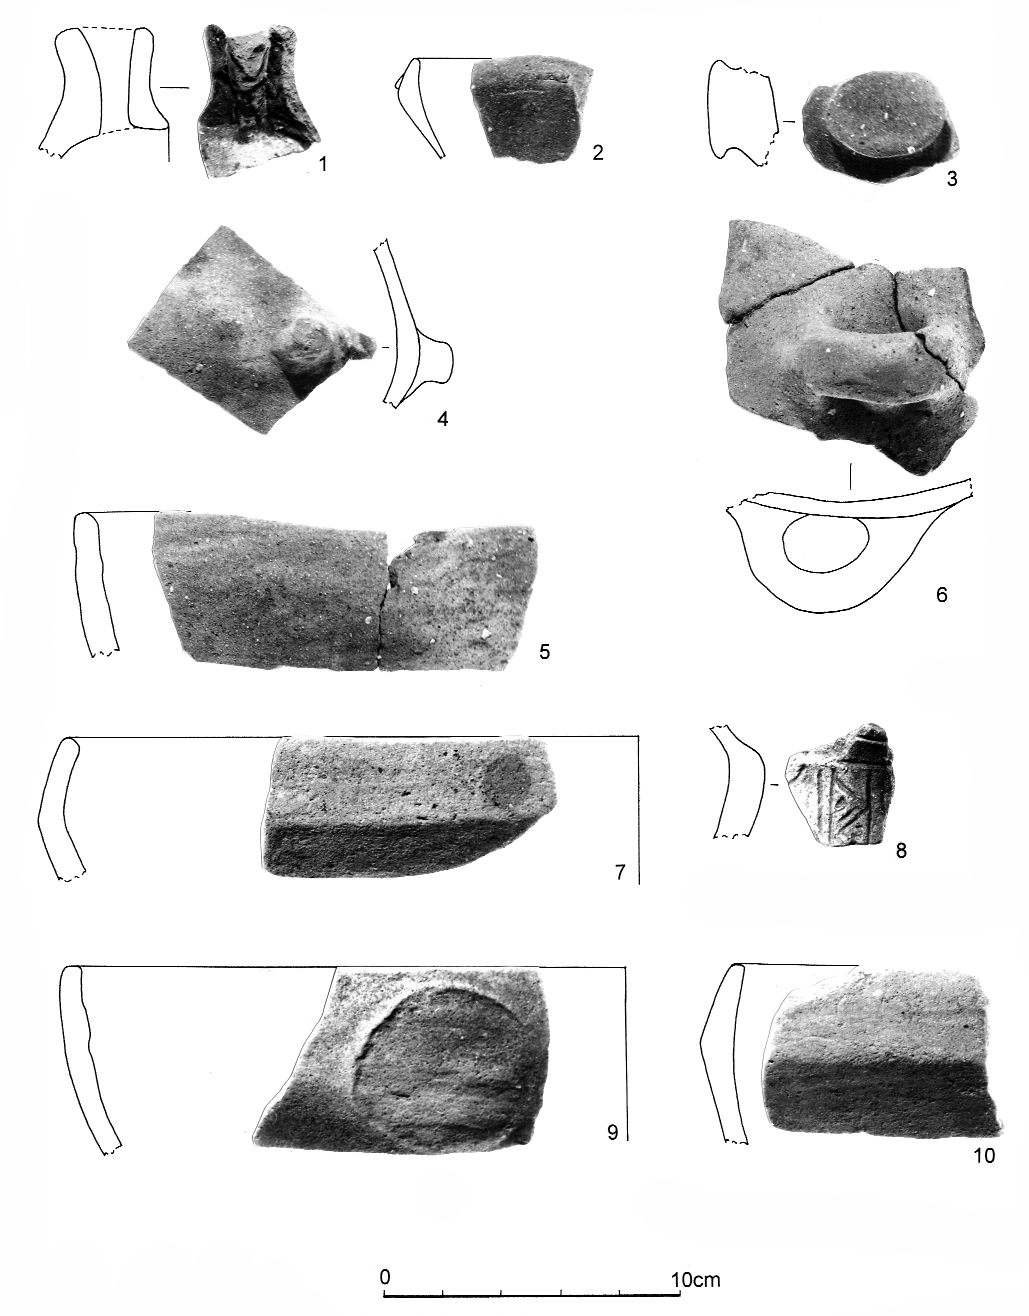 34 Kalicz Nándor 11. kép: Nagykanizsa-Inkey-kápolna. Balaton-Lasinja kultúra, 1-2, 4: Szórvány a 15. objektumból; 3, 5-6: 26. objektum; 7: 34.